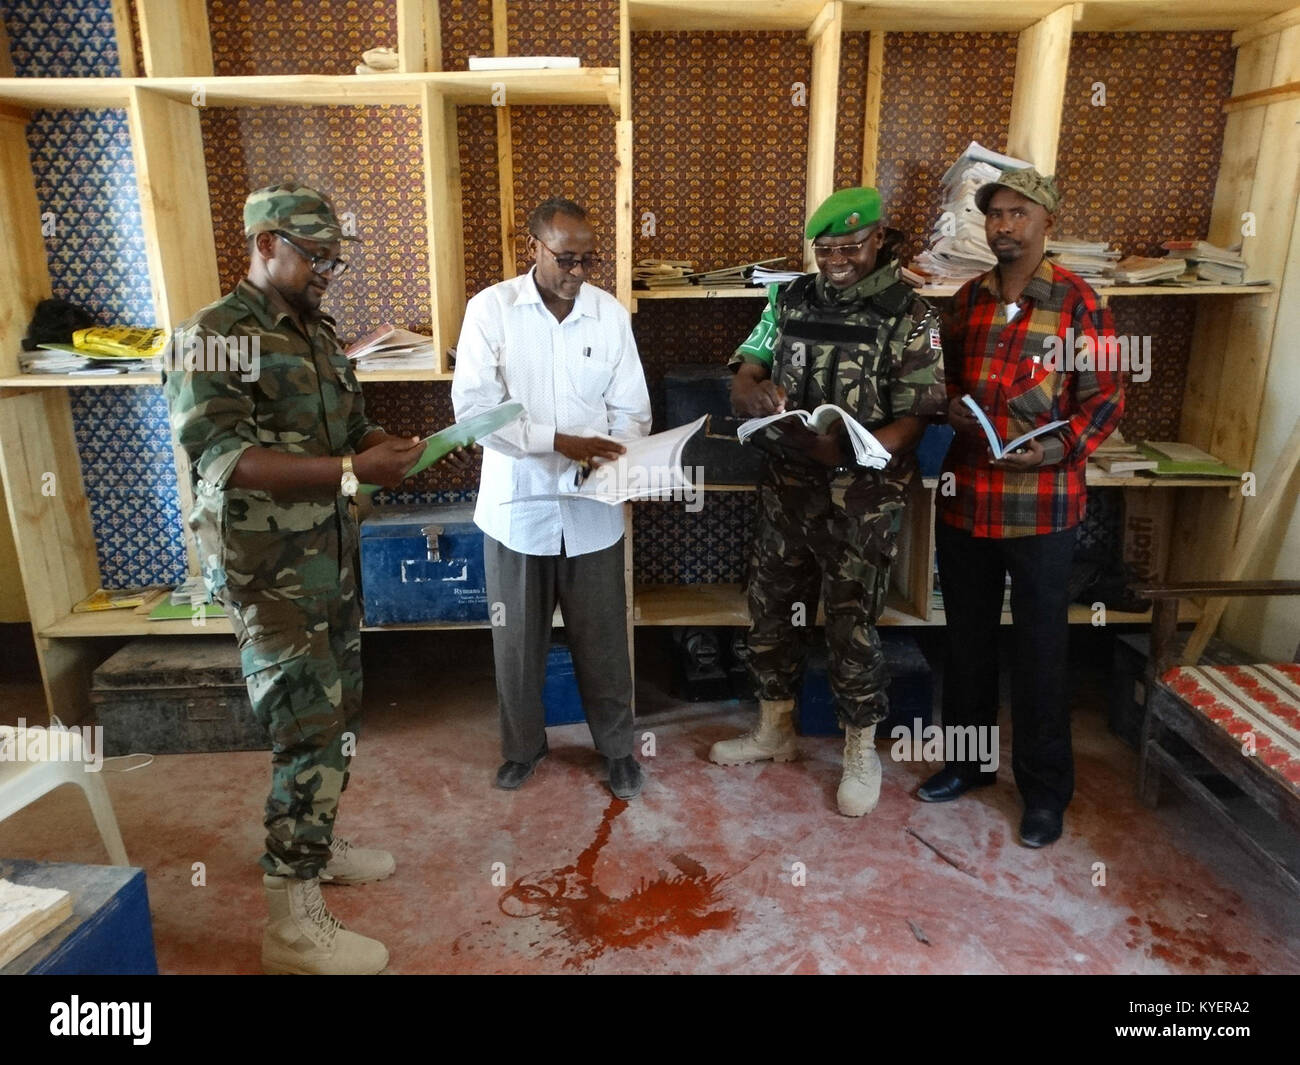 Kenianische Soldaten, als Teil der Mission der Afrikanischen Union in Somalia, stehen neben den Schreibtisch an die Wamo Primary und Secondary School in Dhobley, Somalia gespendet. Regale, sowie Malen, wurden auch in der Schule, in dem sich rund 350 Studenten gespendet. Die AMISOM Foto Stockfoto